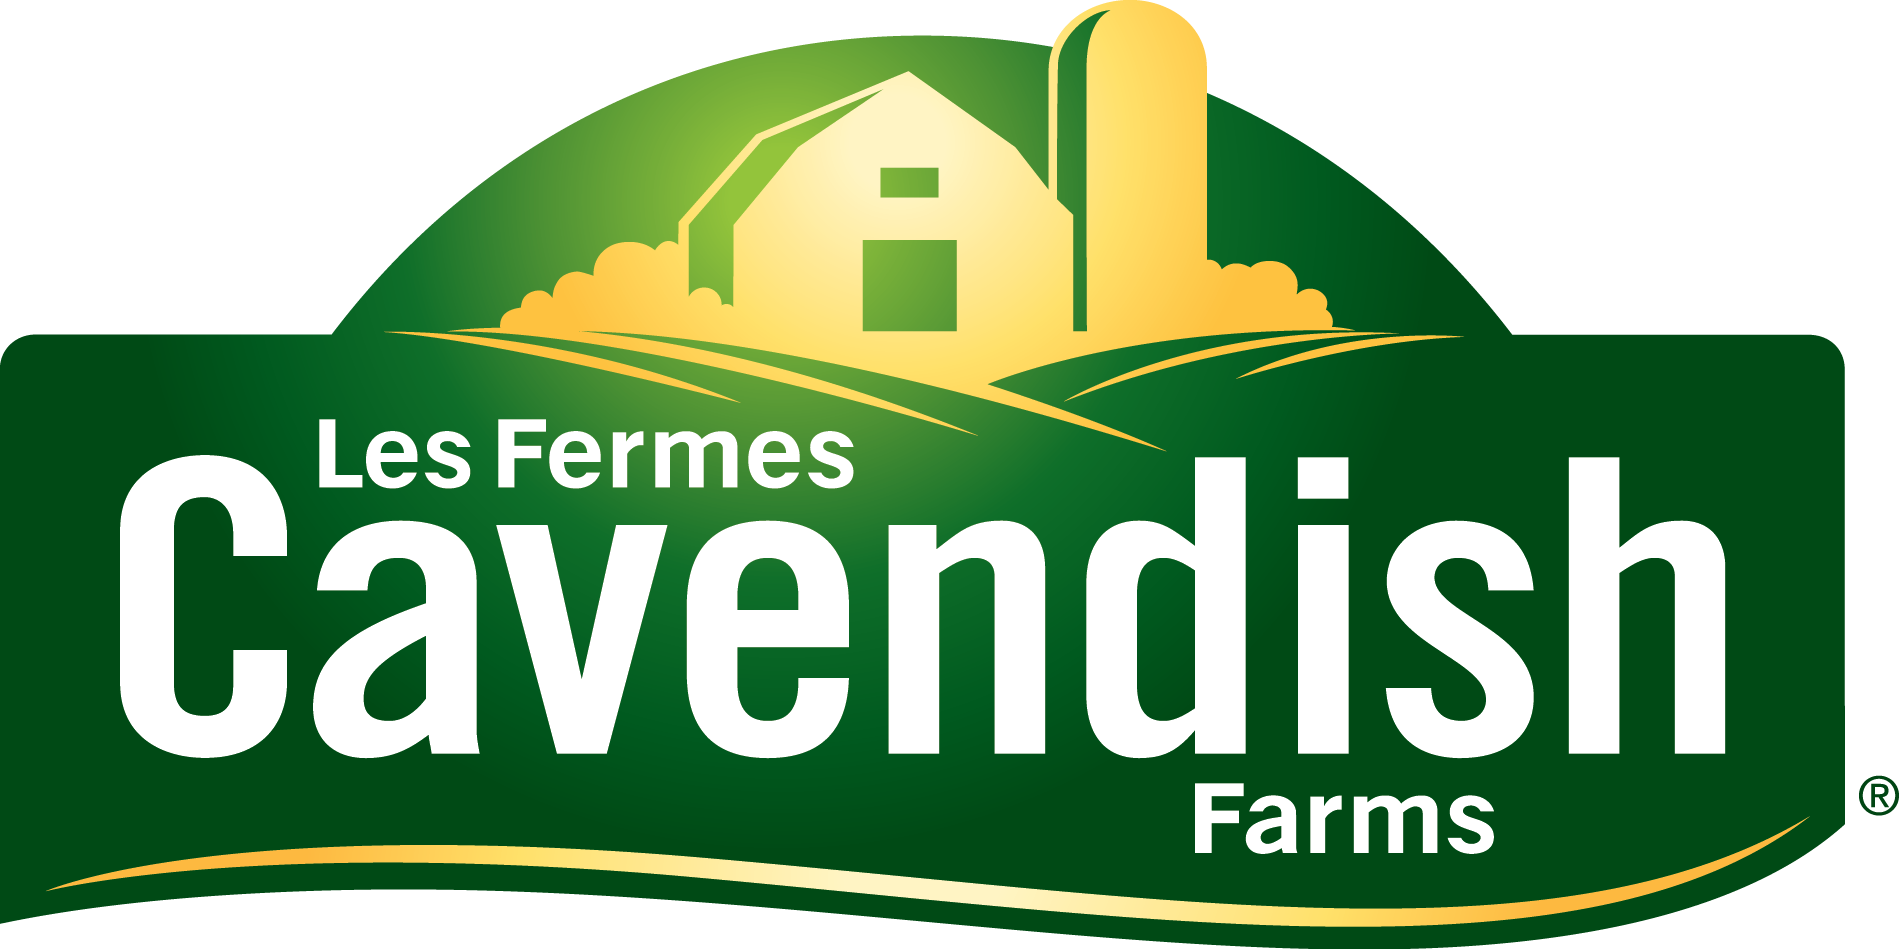 Les Fermes Cavendish annoncent l’ouverture d’un nouveau centre de recherche sur la pomme de terre à l’Île-du-Prince-Édouard